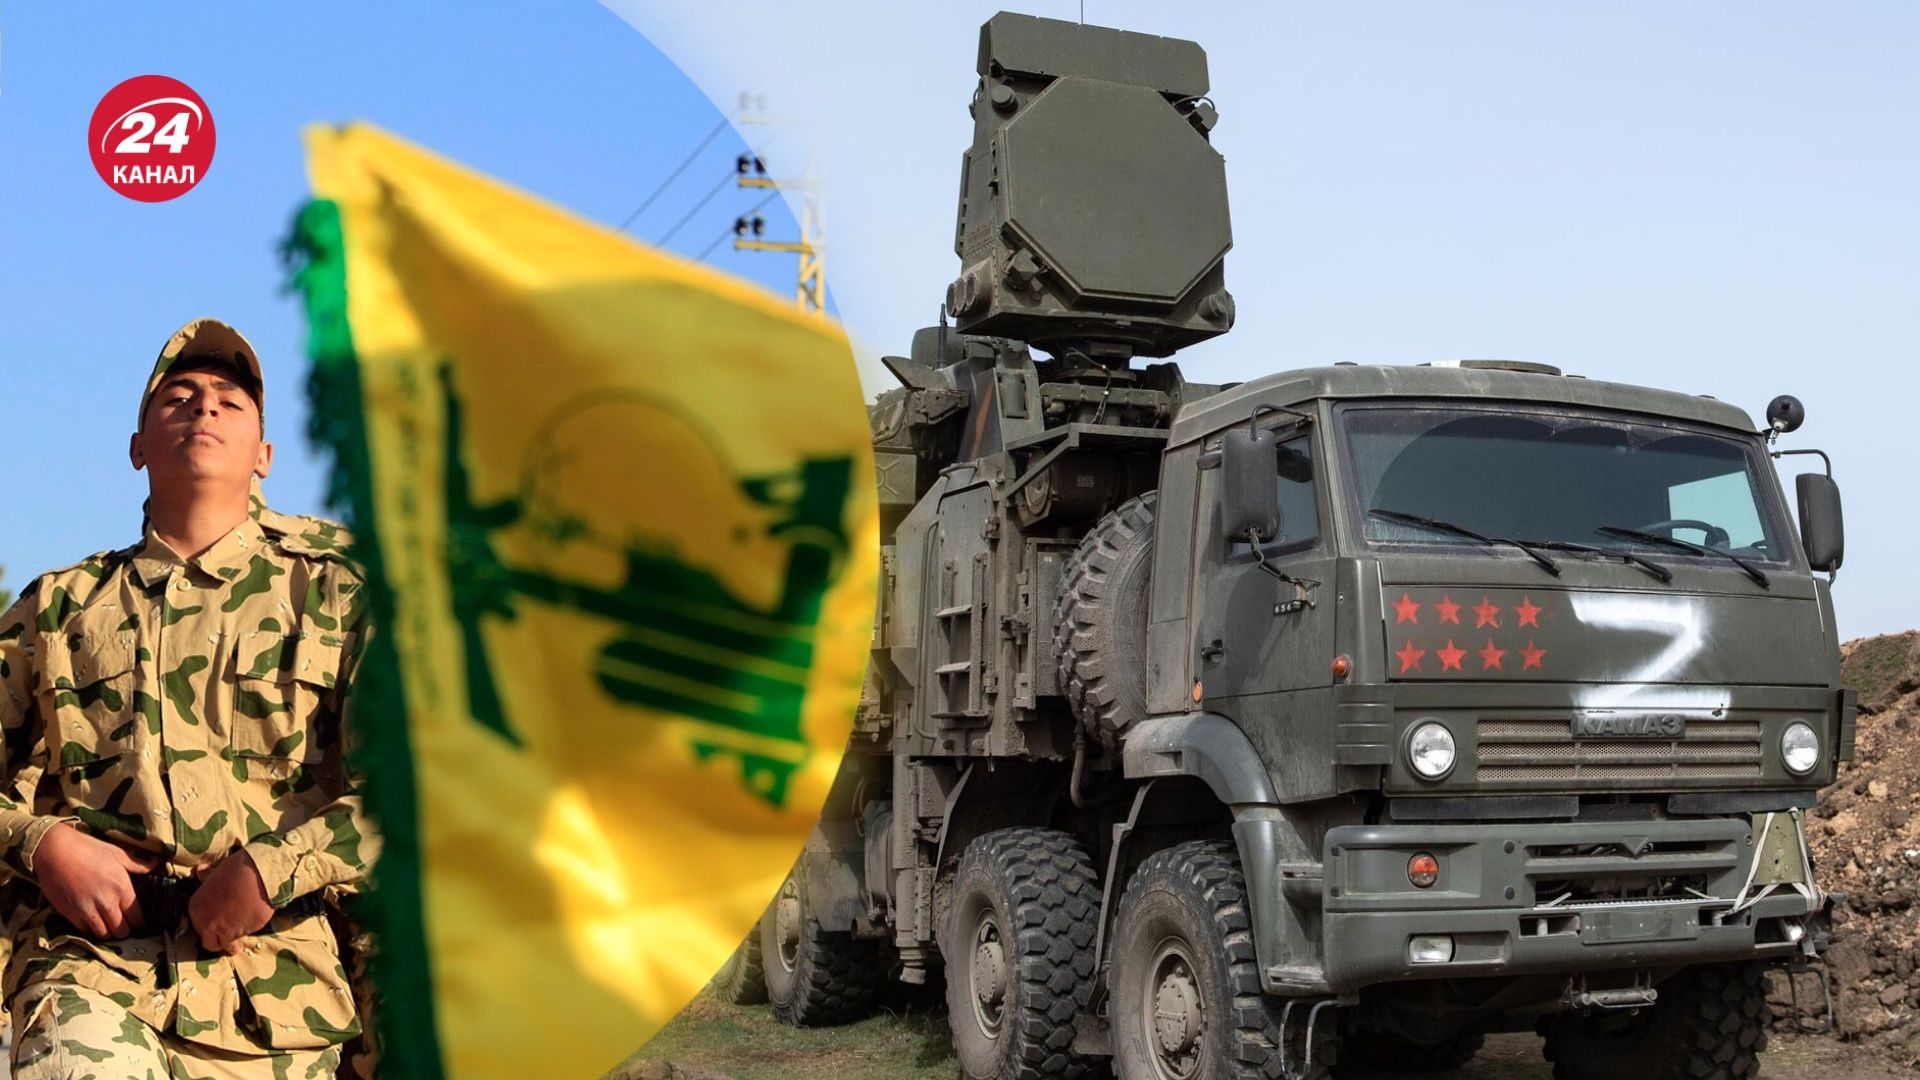 Хезболла может получить от ЧВК "Вагнера" передовую ПВО